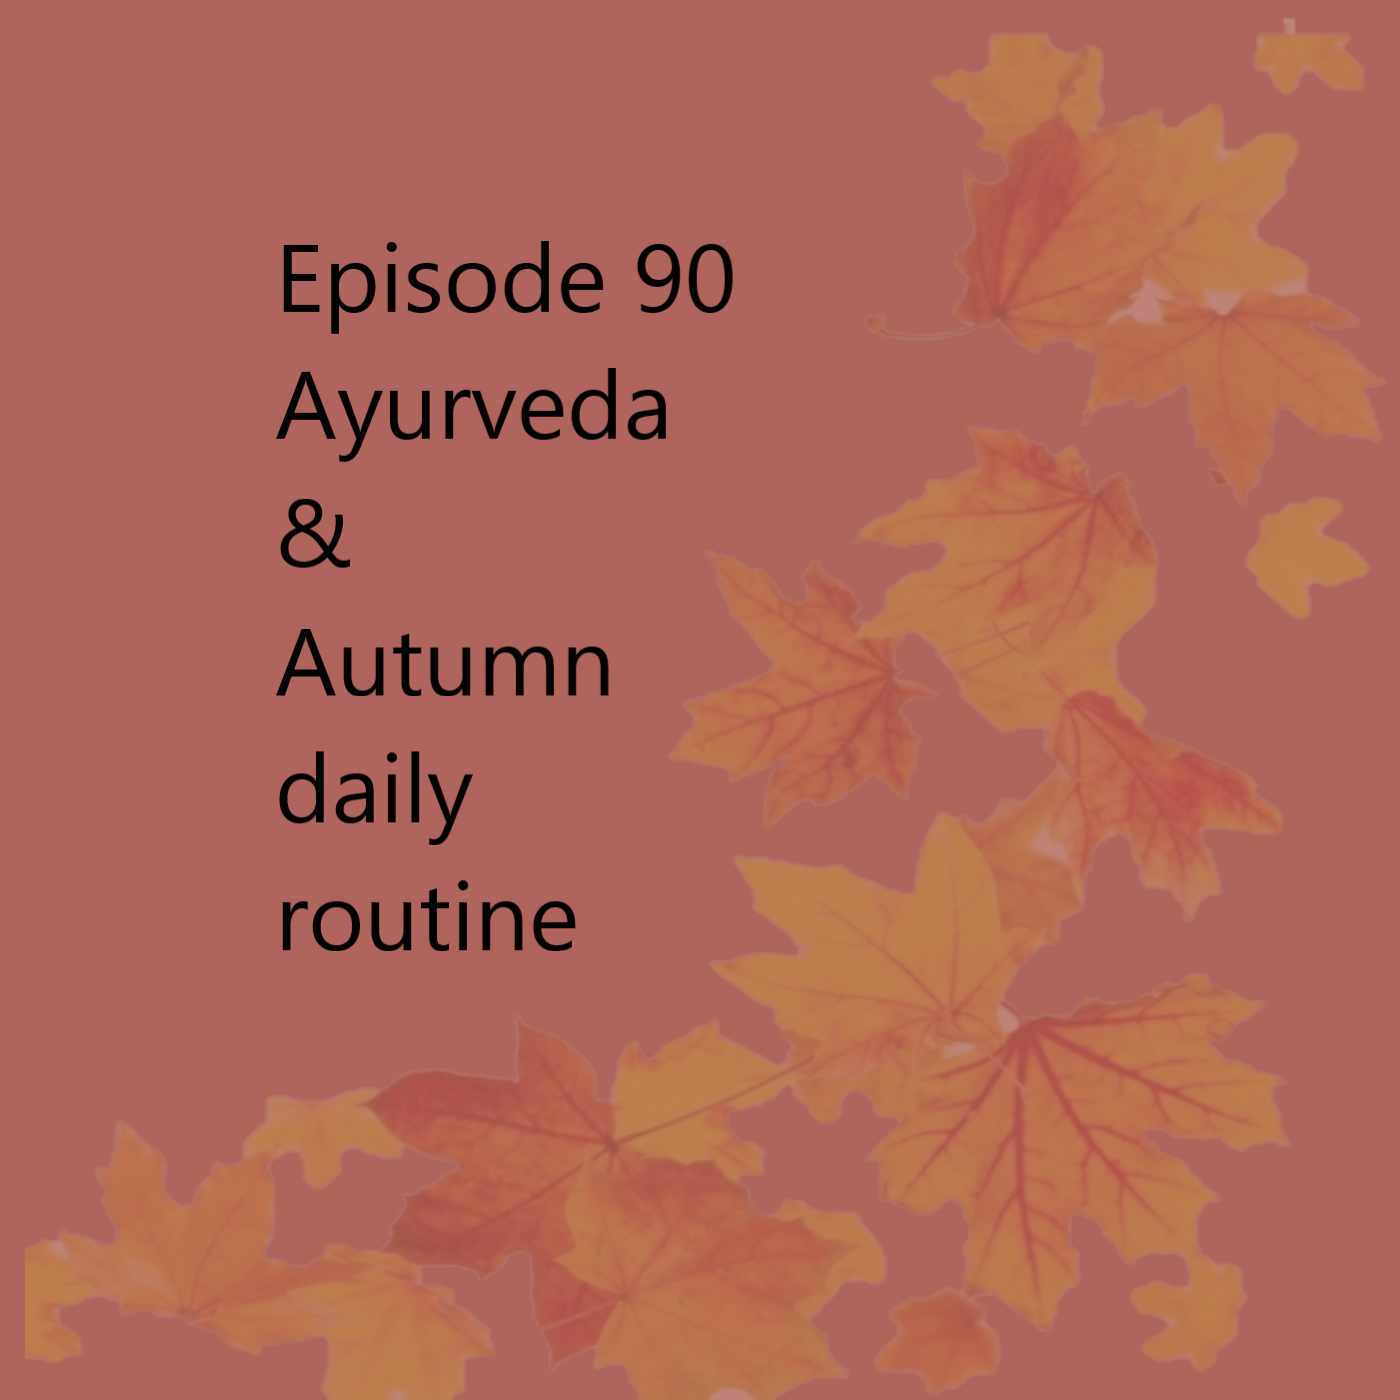 Episode 90 Autumn daily routine